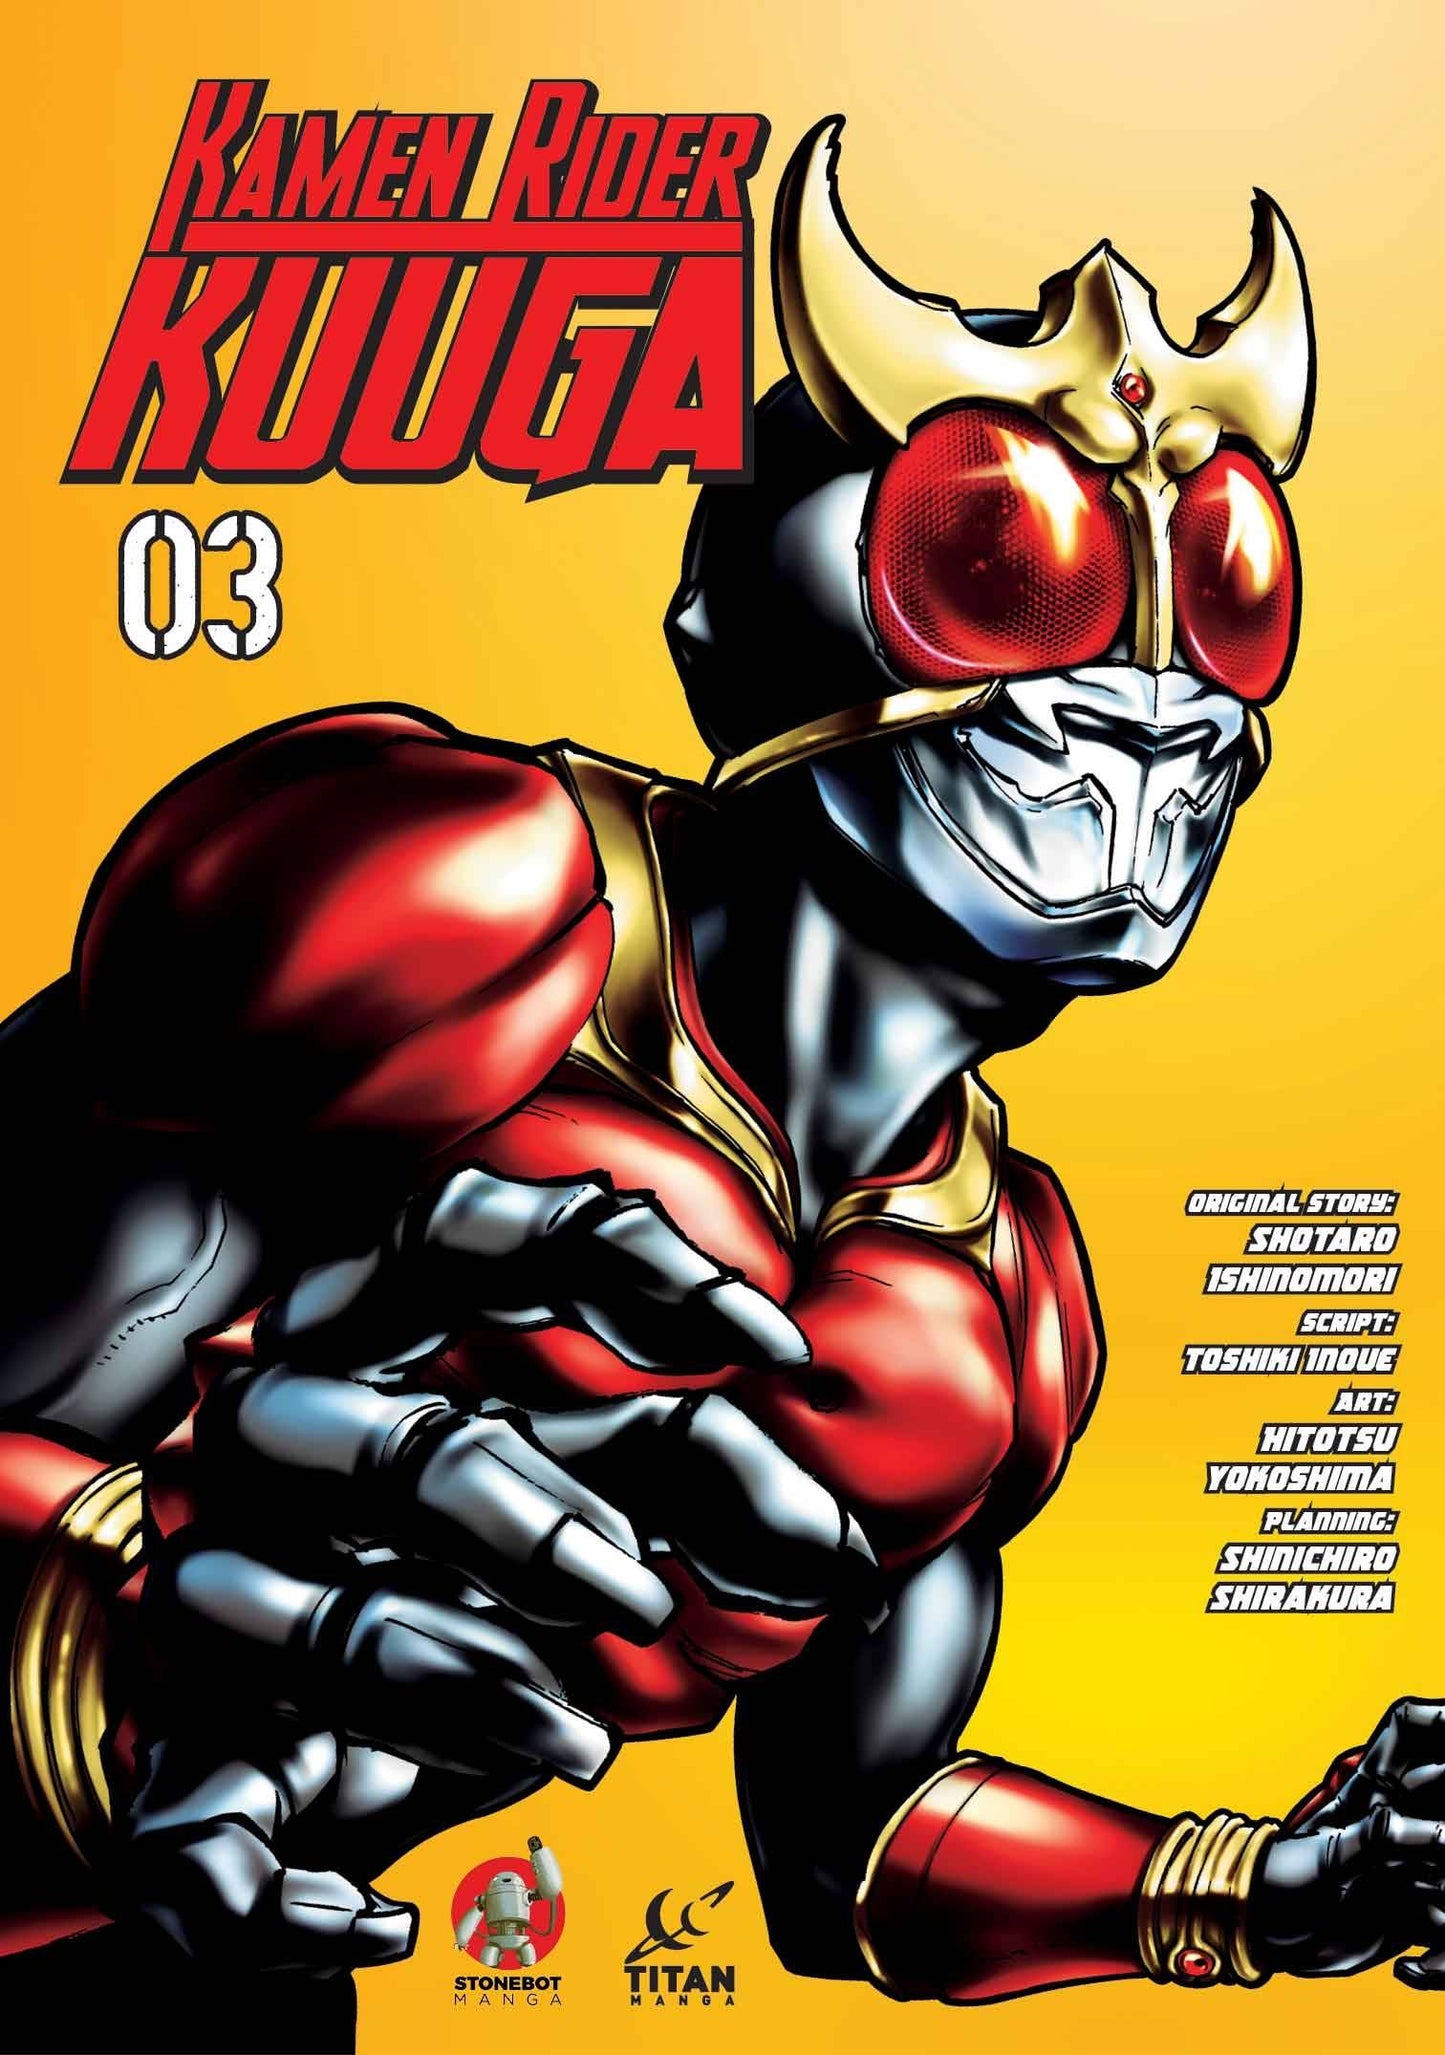 The One Stop Shop Comics & Games Kamen Rider Kuuga Gn Vol 03 (C: 0-1-2) (3/15/2023) TITAN COMICS